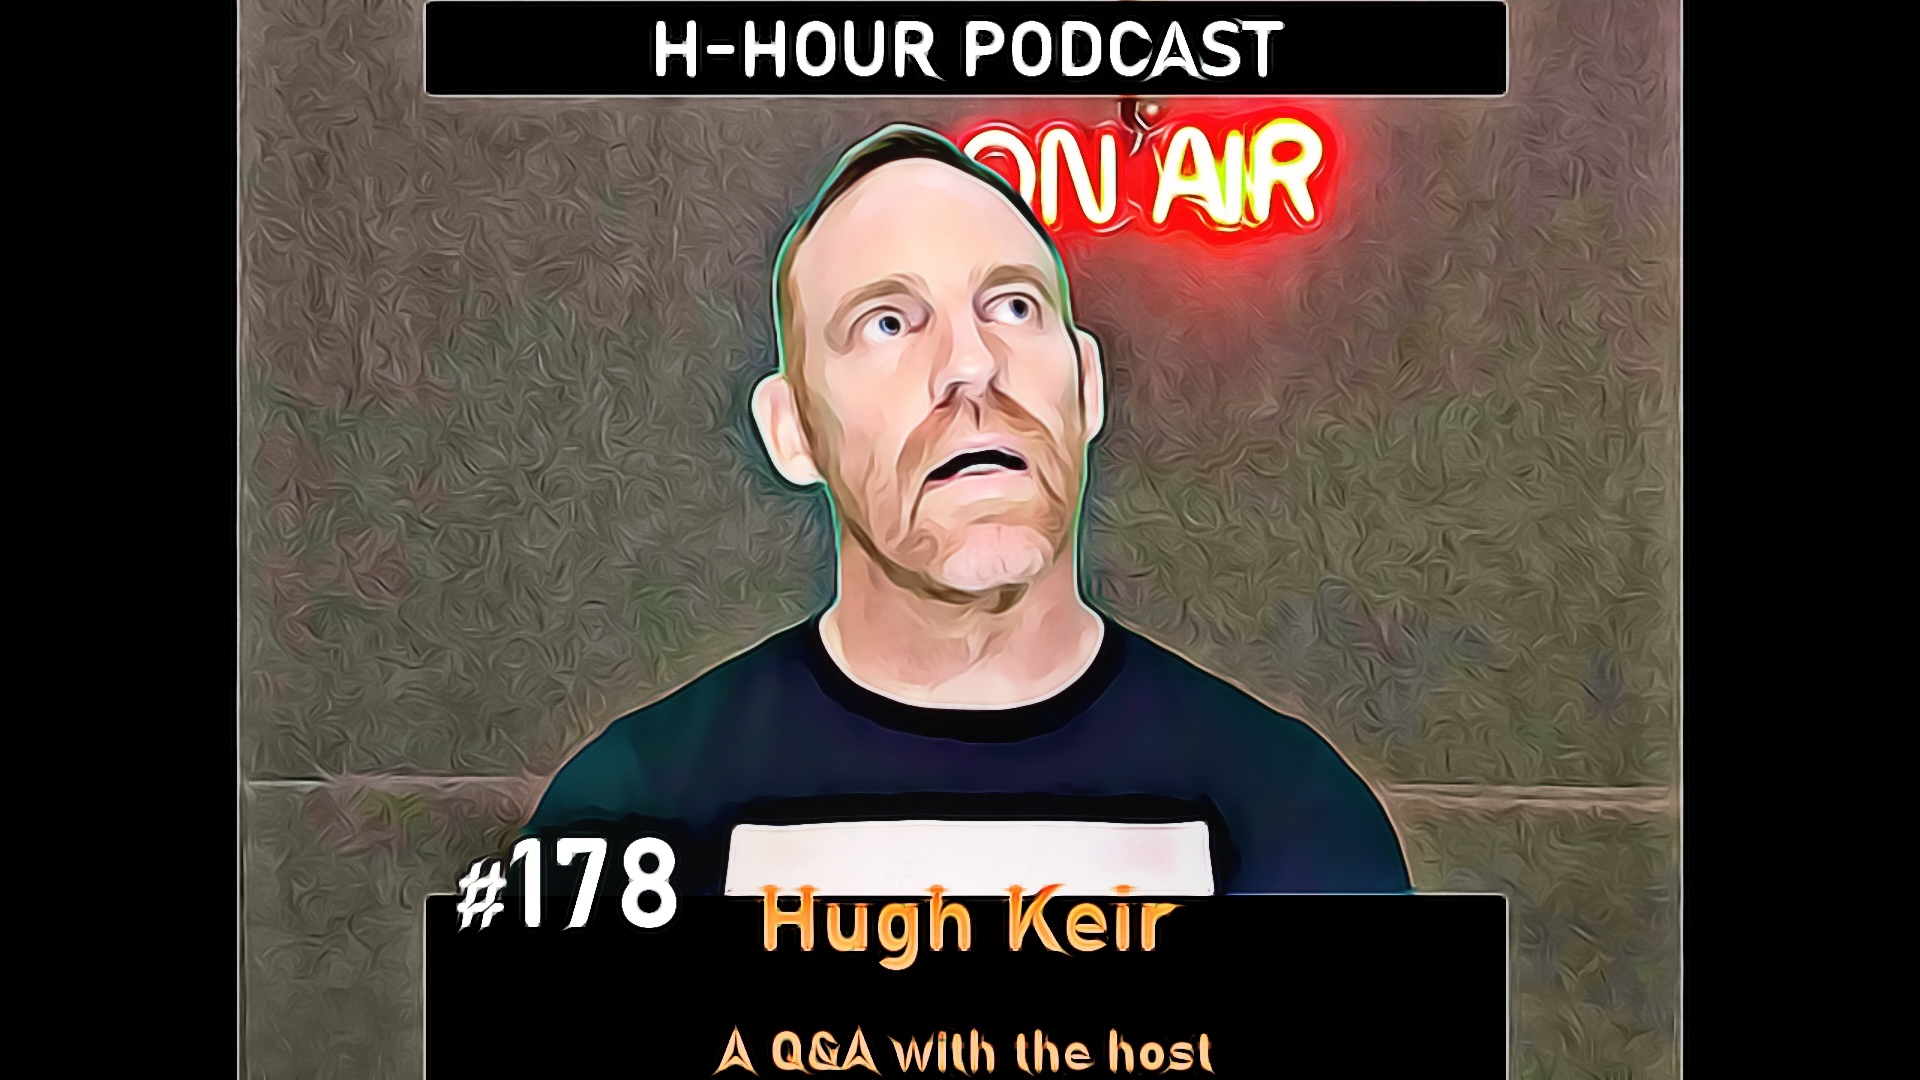 hugh keir q and a h-hour Podcast NFT cover image